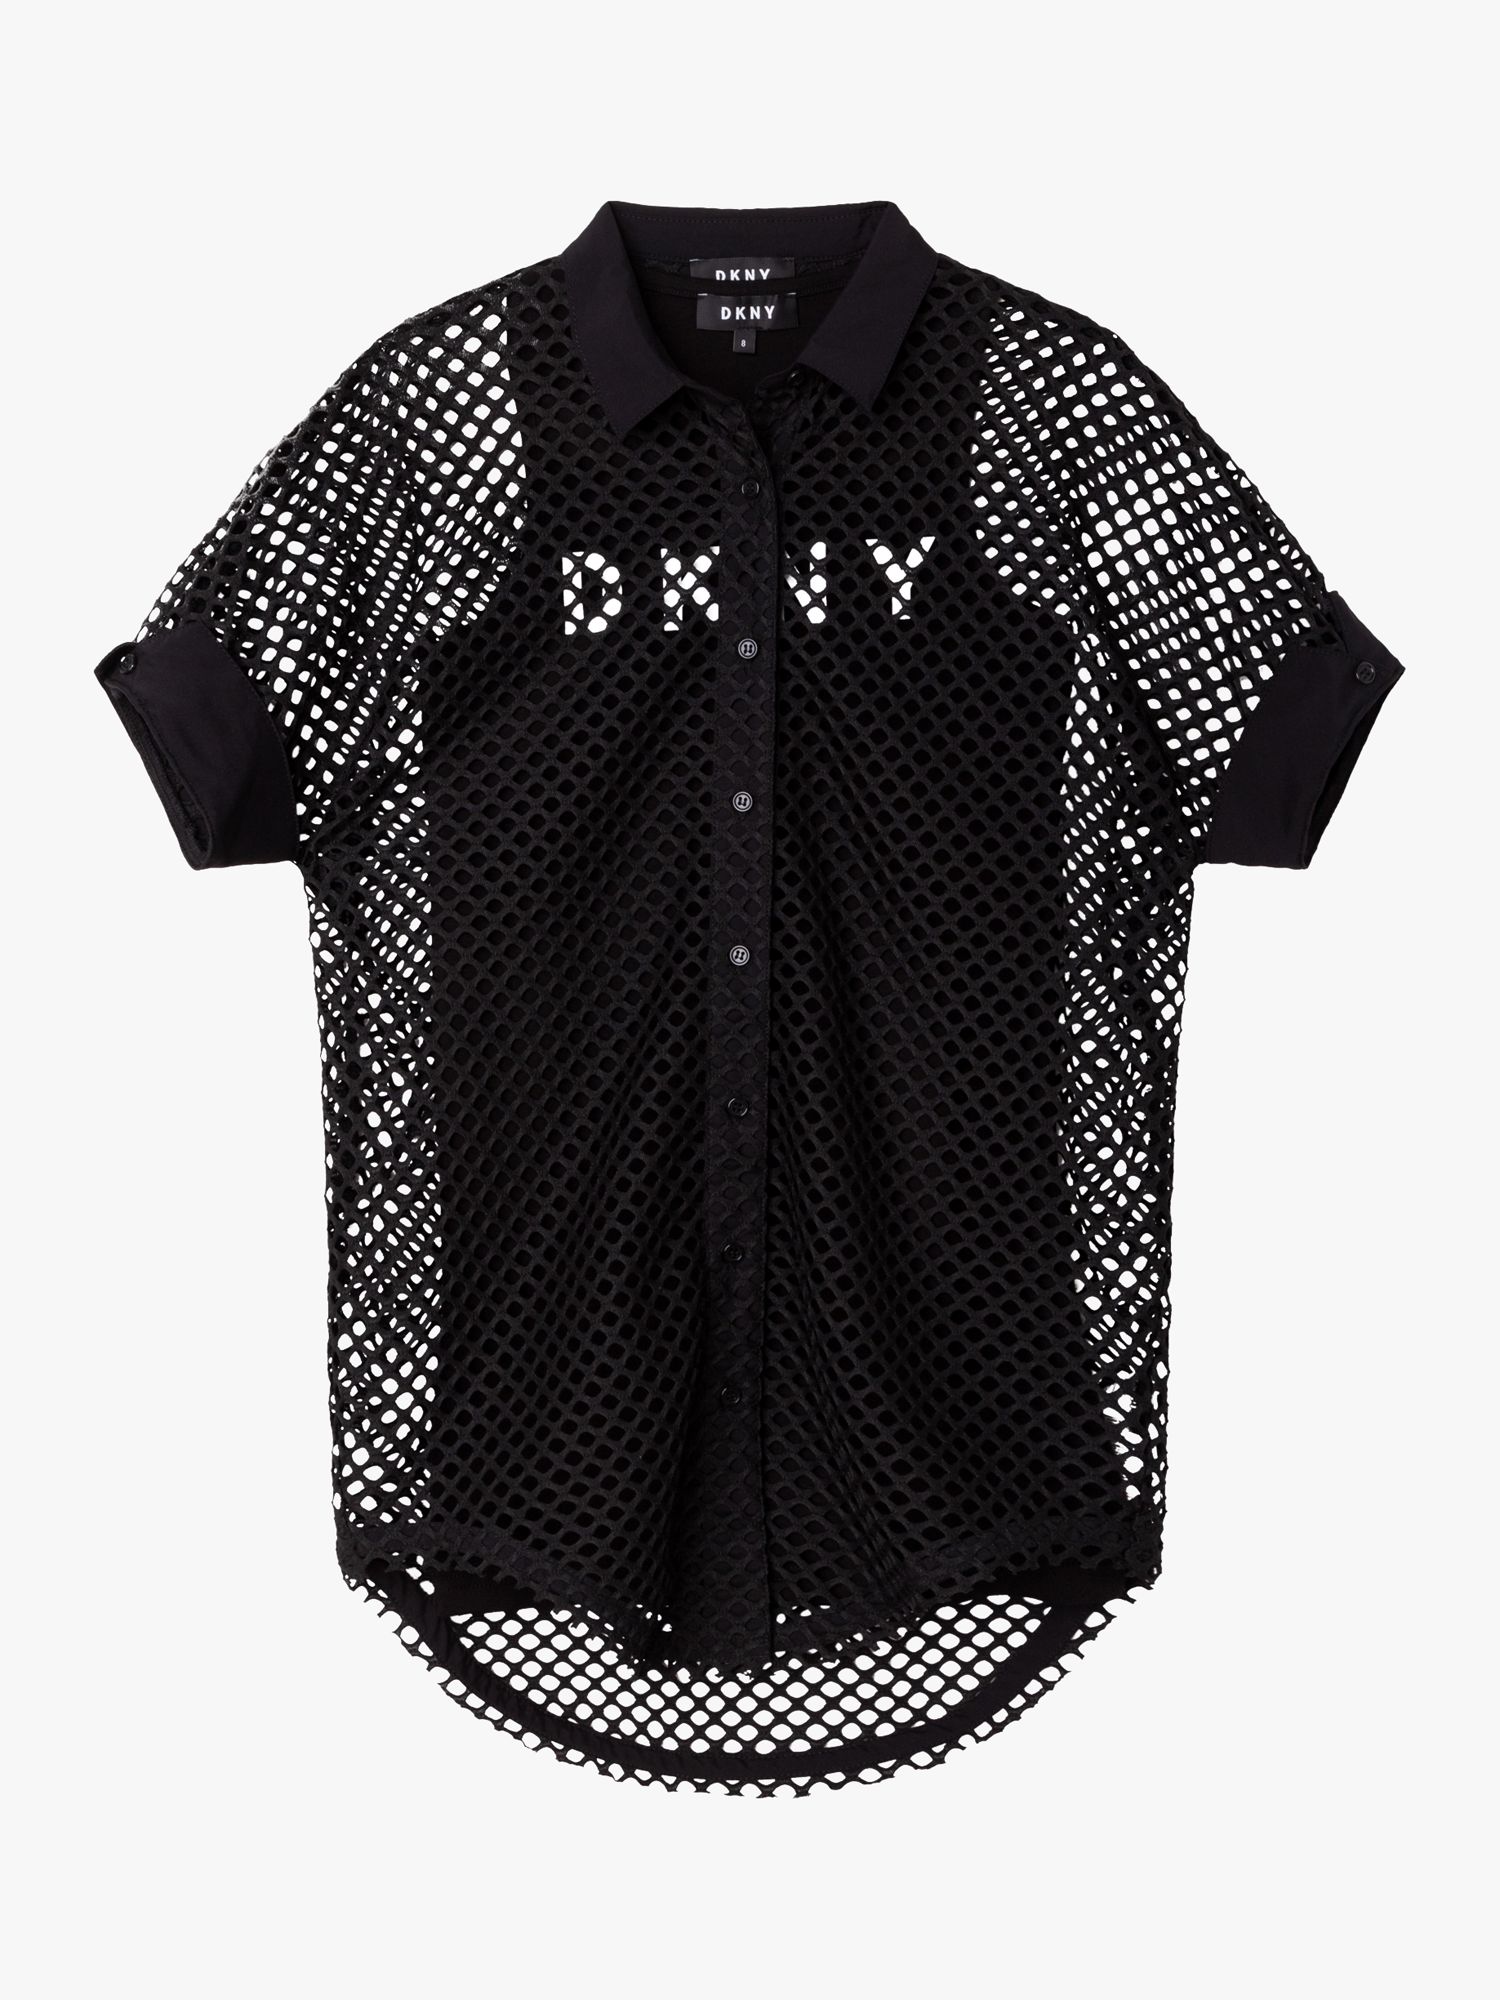 DKNY Kids' 2-in-1 Jersey Dress, Black, 6 years